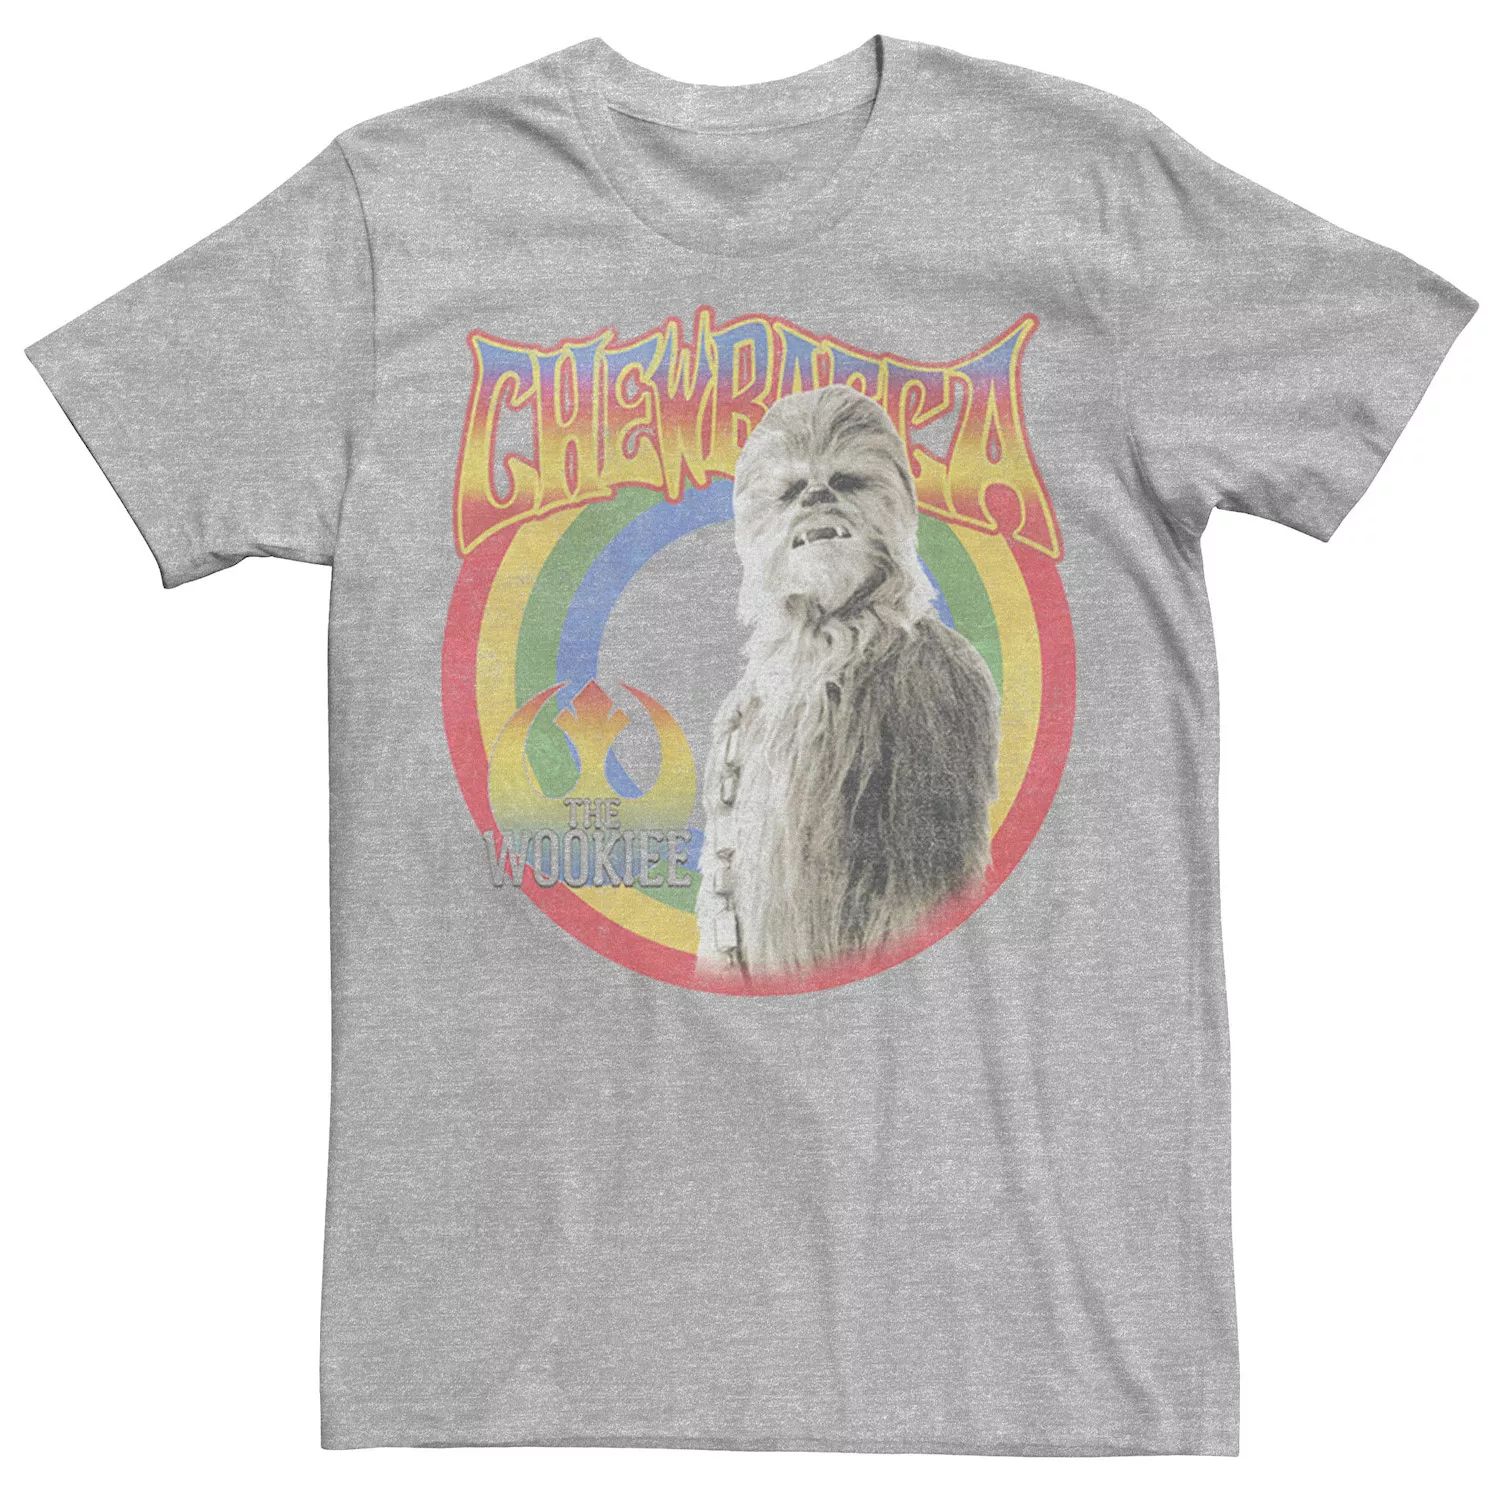 Мужская футболка в стиле ретро Rainbow Chewbacca The Wookiee Star Wars